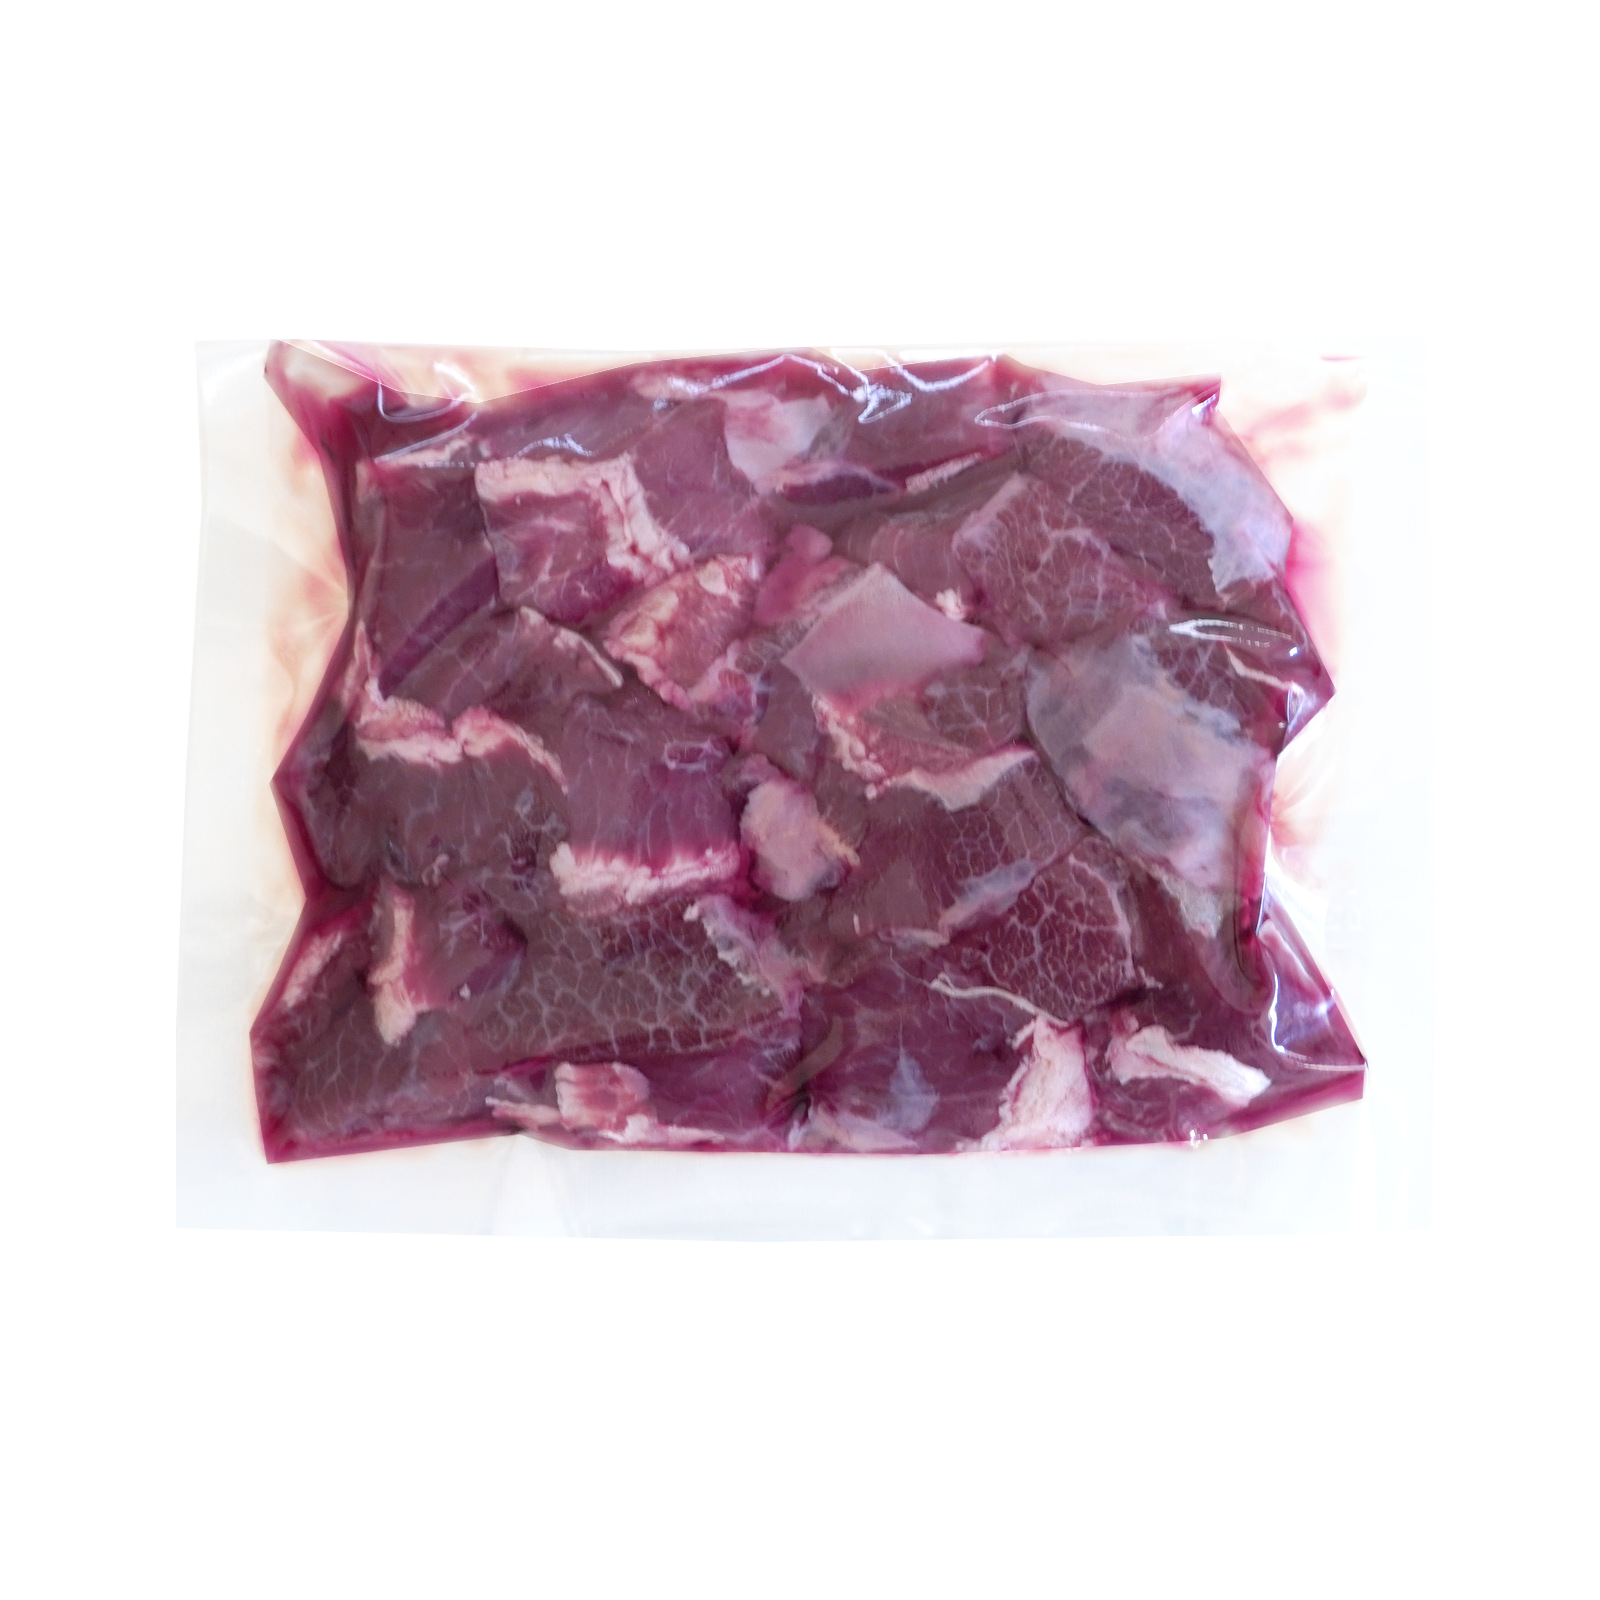 グラスフェッドビーフ 牛ほほ肉 角切り 煮込み・カレー・シチュー用 オーストラリア産 牧草牛 (300g) ホライズンファームズ